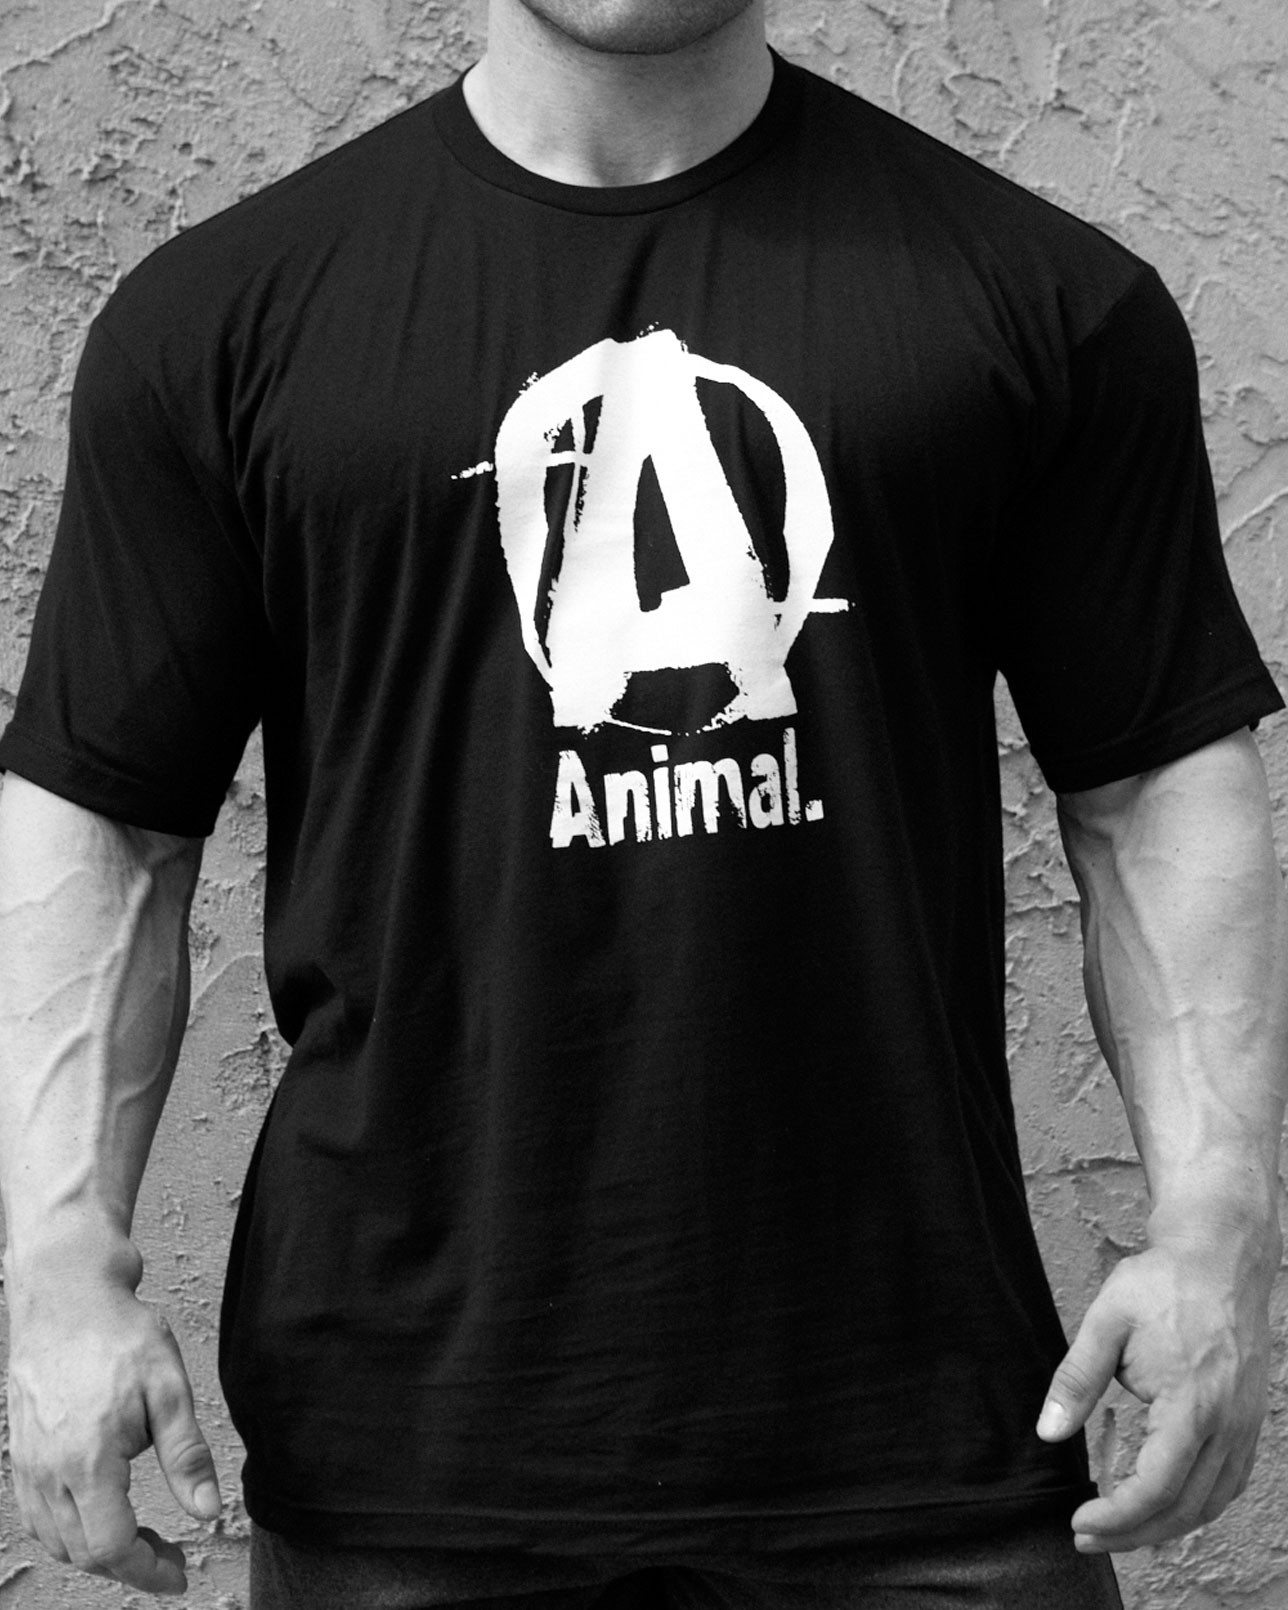 Universal Animal Shirt